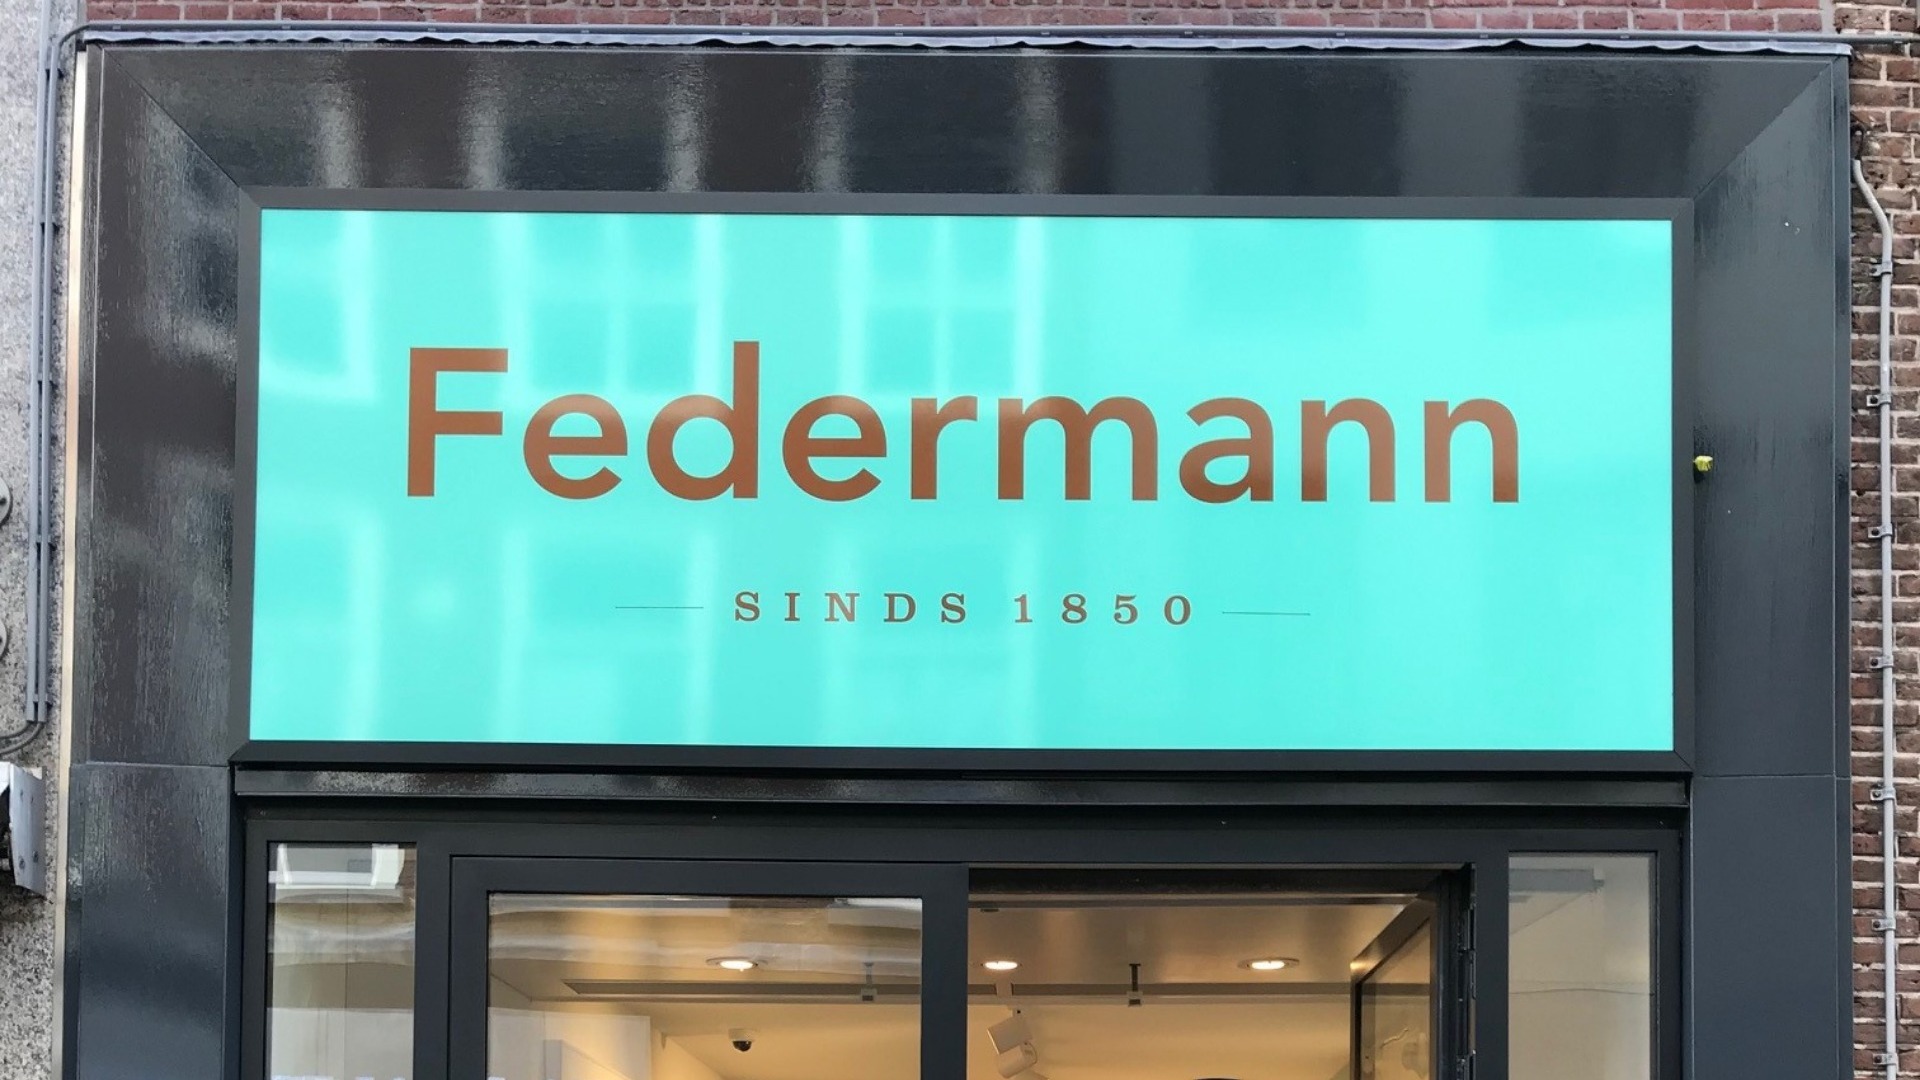 Federmann Haarlem